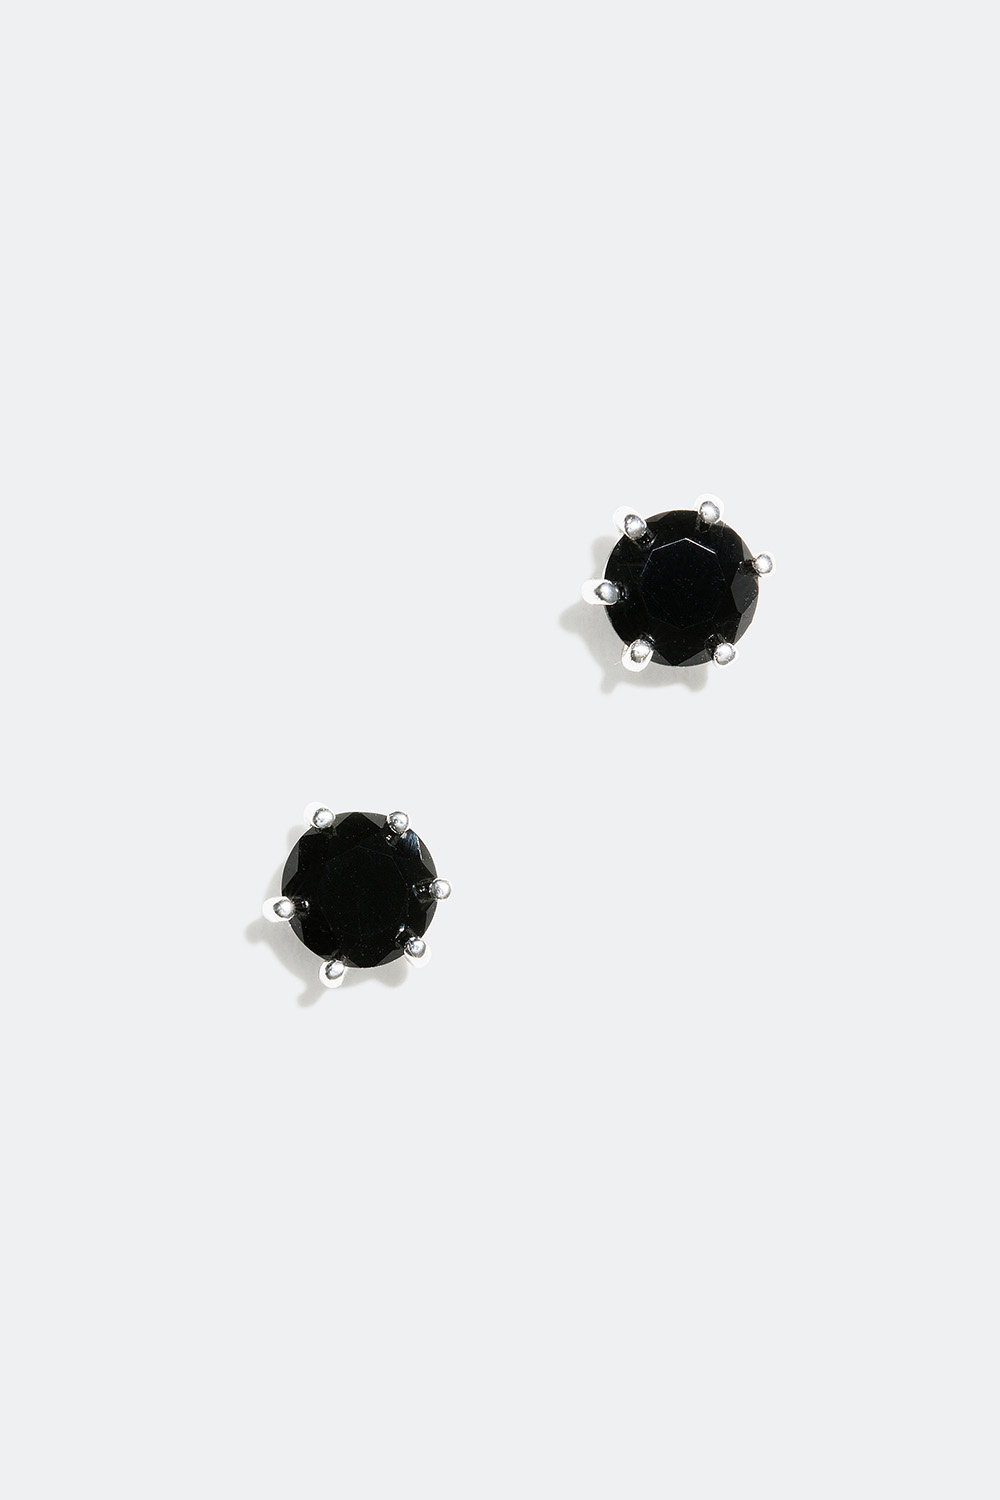 Små sorte ørestikker, ægte sølv, 0,5 cm